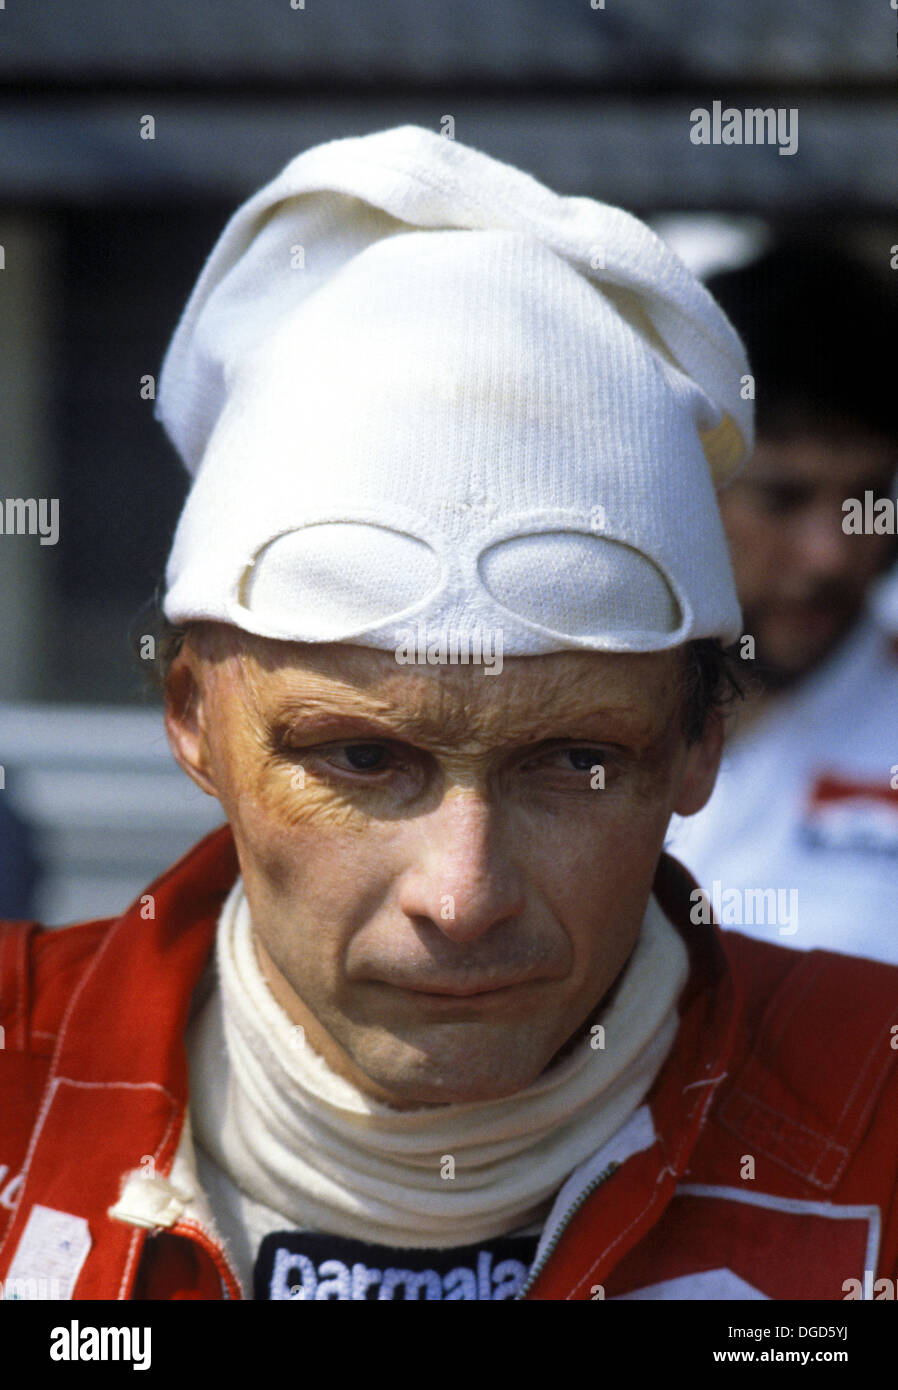 Niki Lauda, pilote automobile autrichien qui a remporté le Championnat du Monde de Formule 1 3 fois en 1975, 1977 et 1984. Photographié en 1970. Banque D'Images